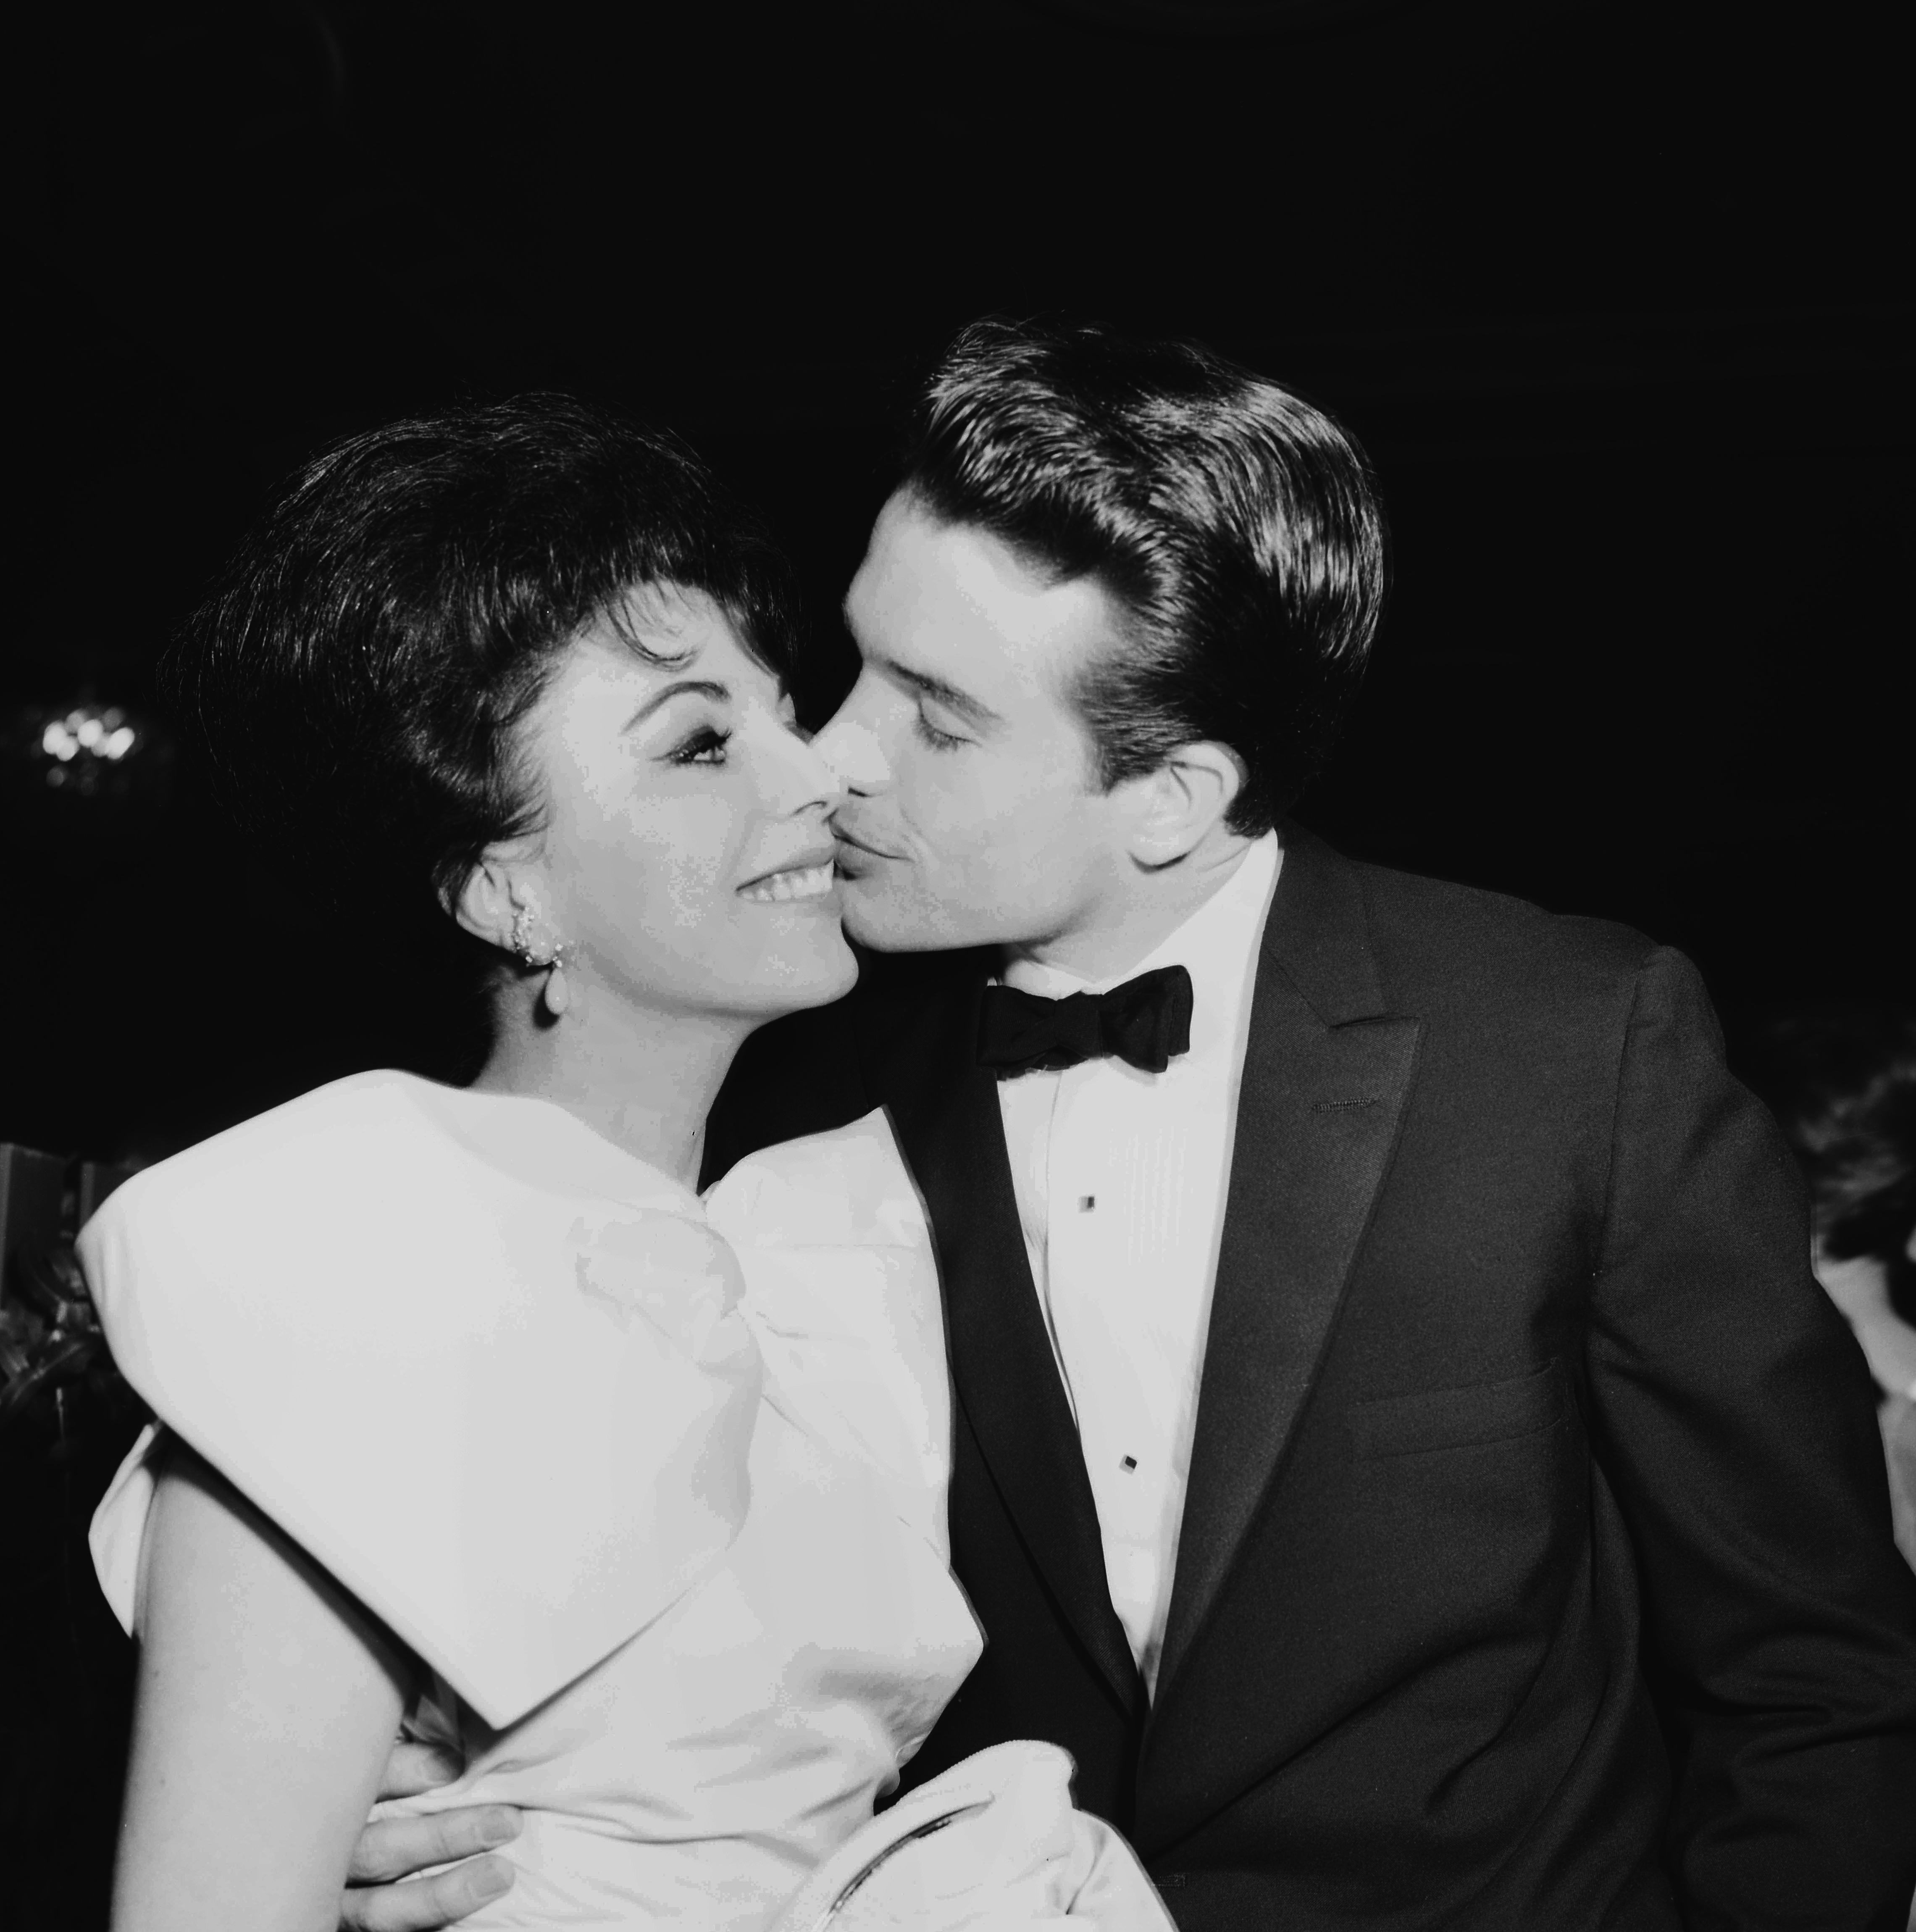 Warren Beatty besa a Joan Collins mientras asisten a una fiesta en Los Ángeles, California, en 1959. | Fuente: Getty Images